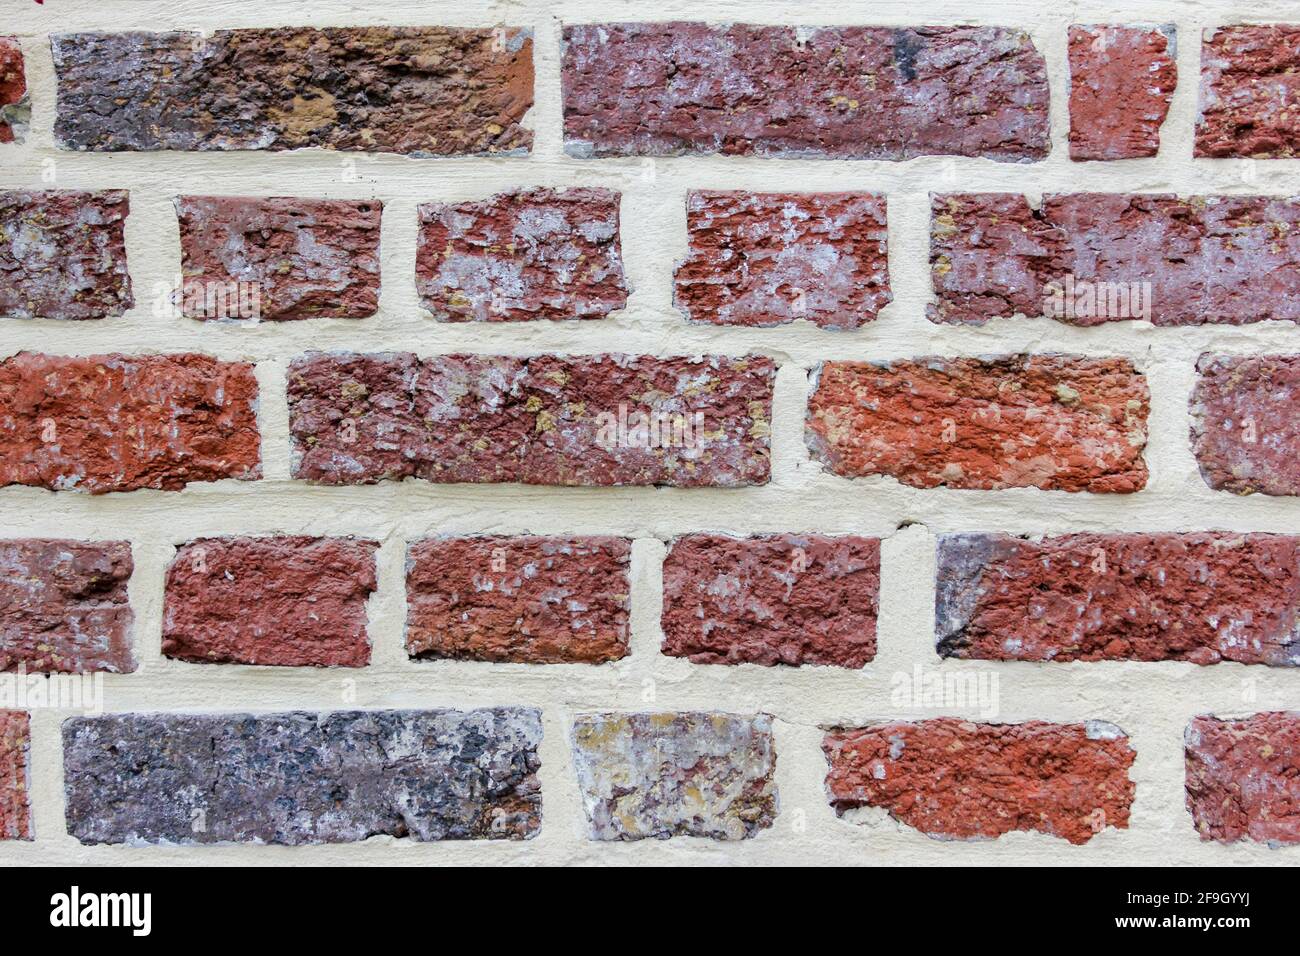 un mur de brique comme une texture Banque D'Images